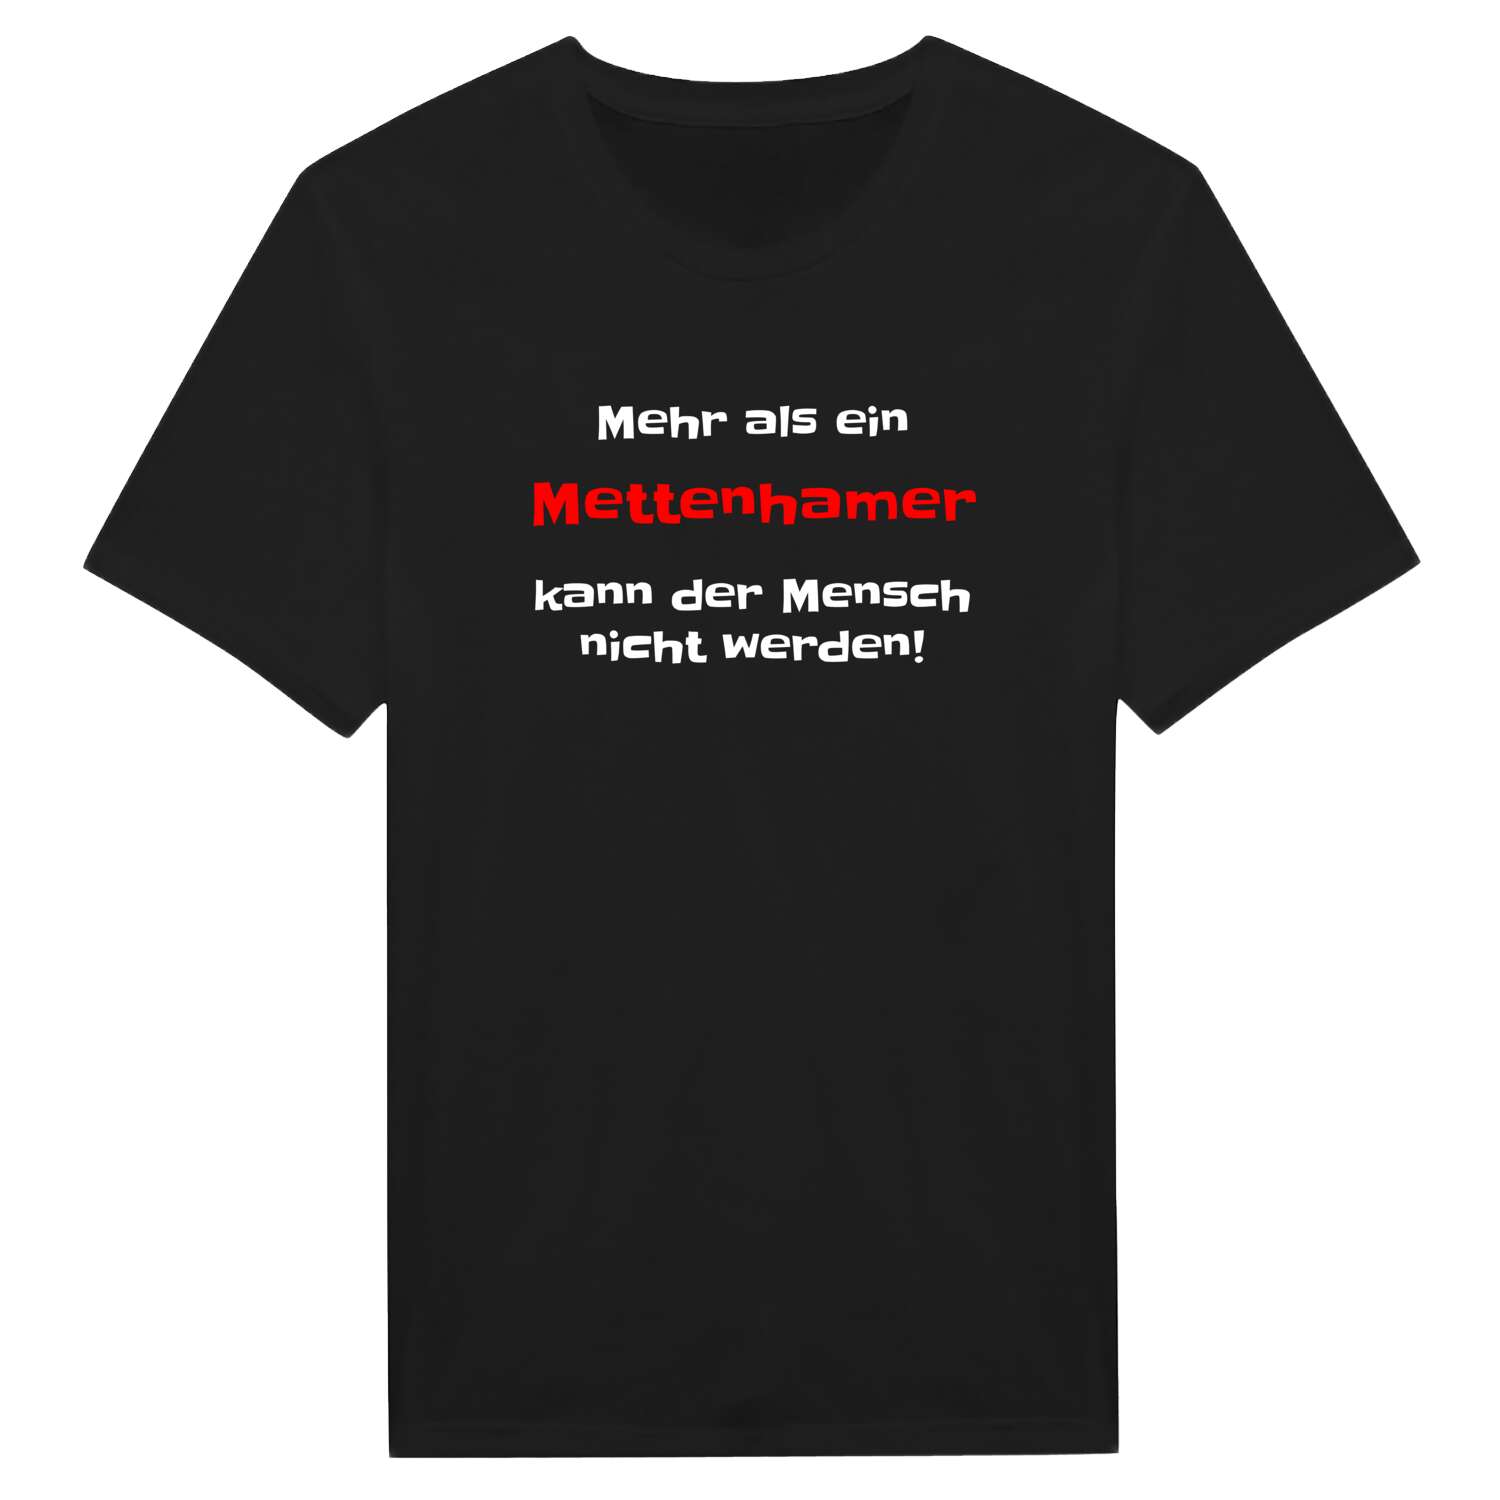 Mettenham T-Shirt »Mehr als ein«